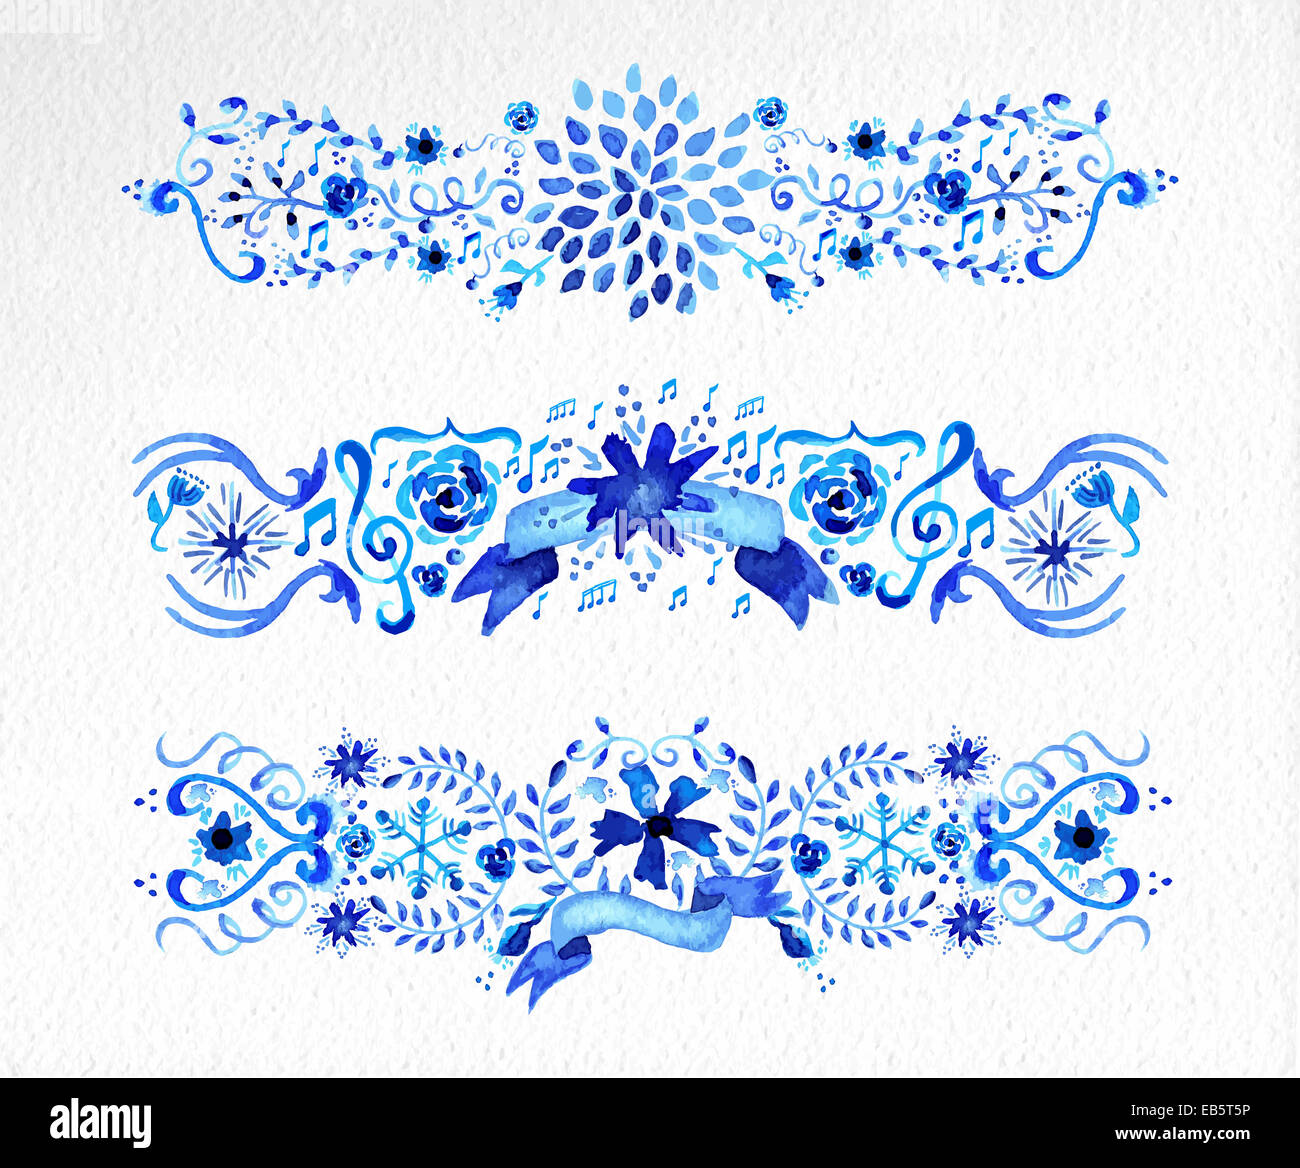 Ornement fleurs Aquarelle dessinés à la main, imprimés en bleu. Idéal pour le scrapbooking, saint valentin, mariage et carte de Noël. Vecteur EPS10 Banque D'Images